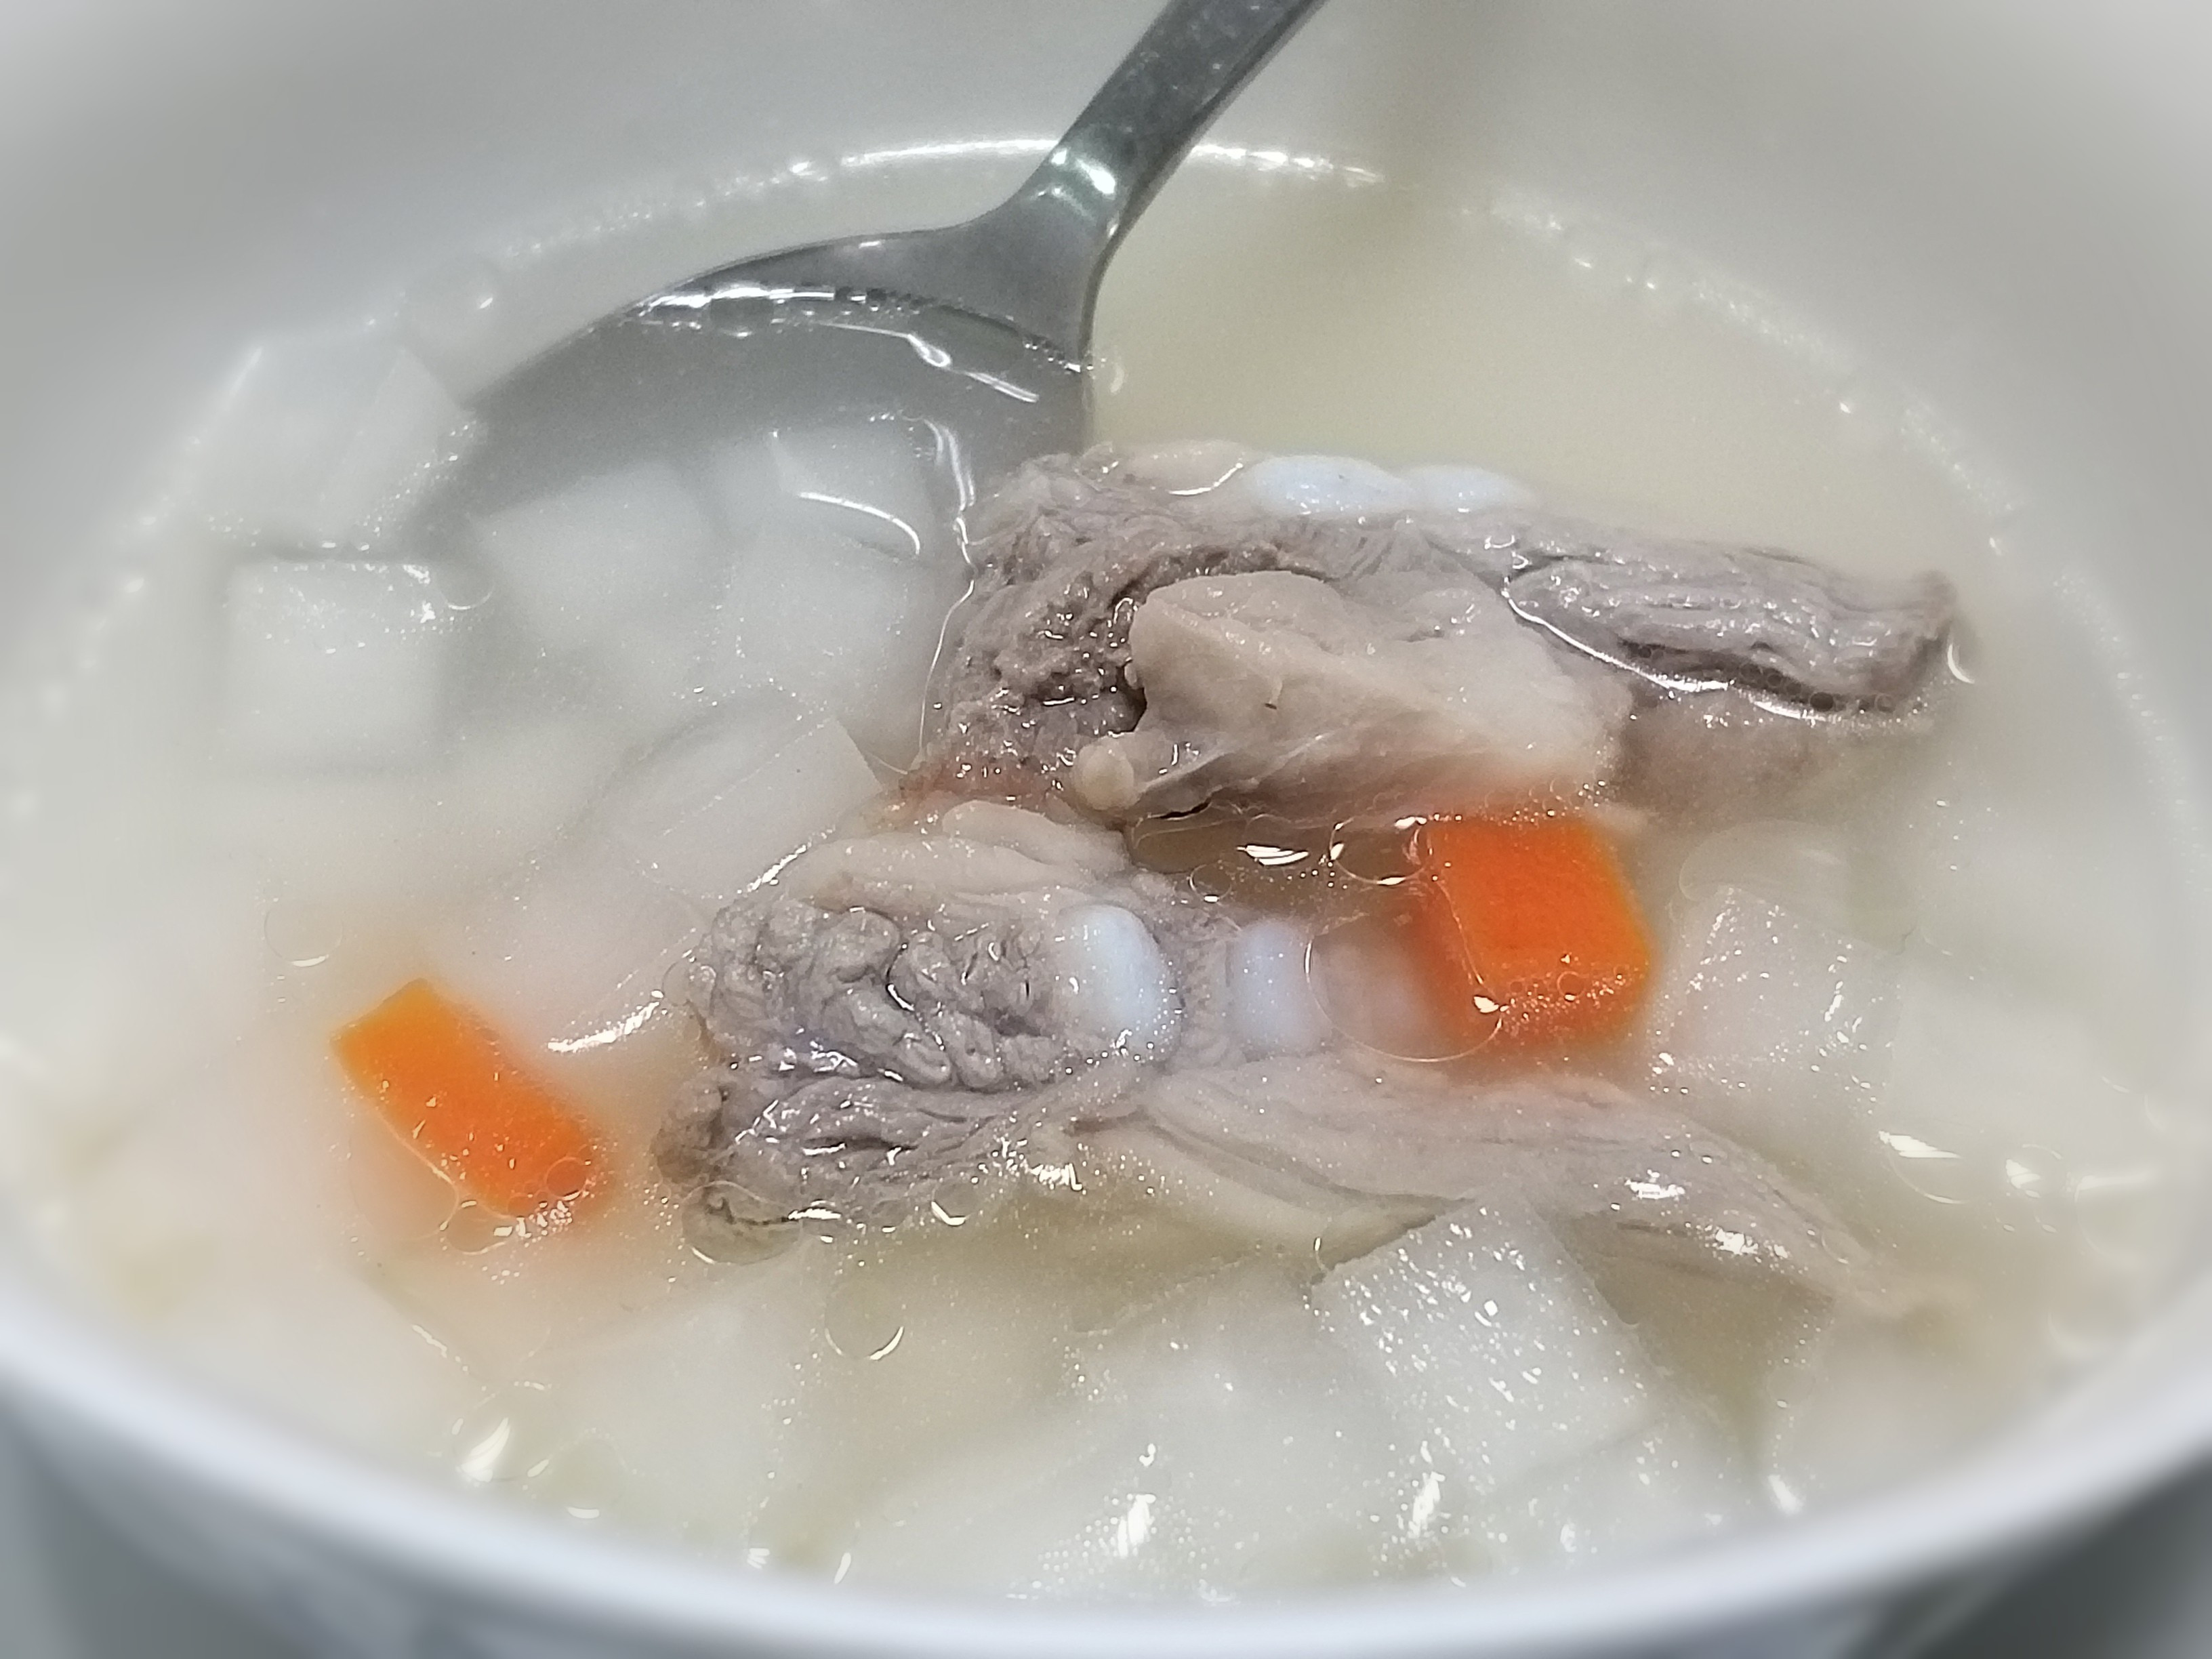 蘿蔔軟骨湯～年菜必備美味湯品